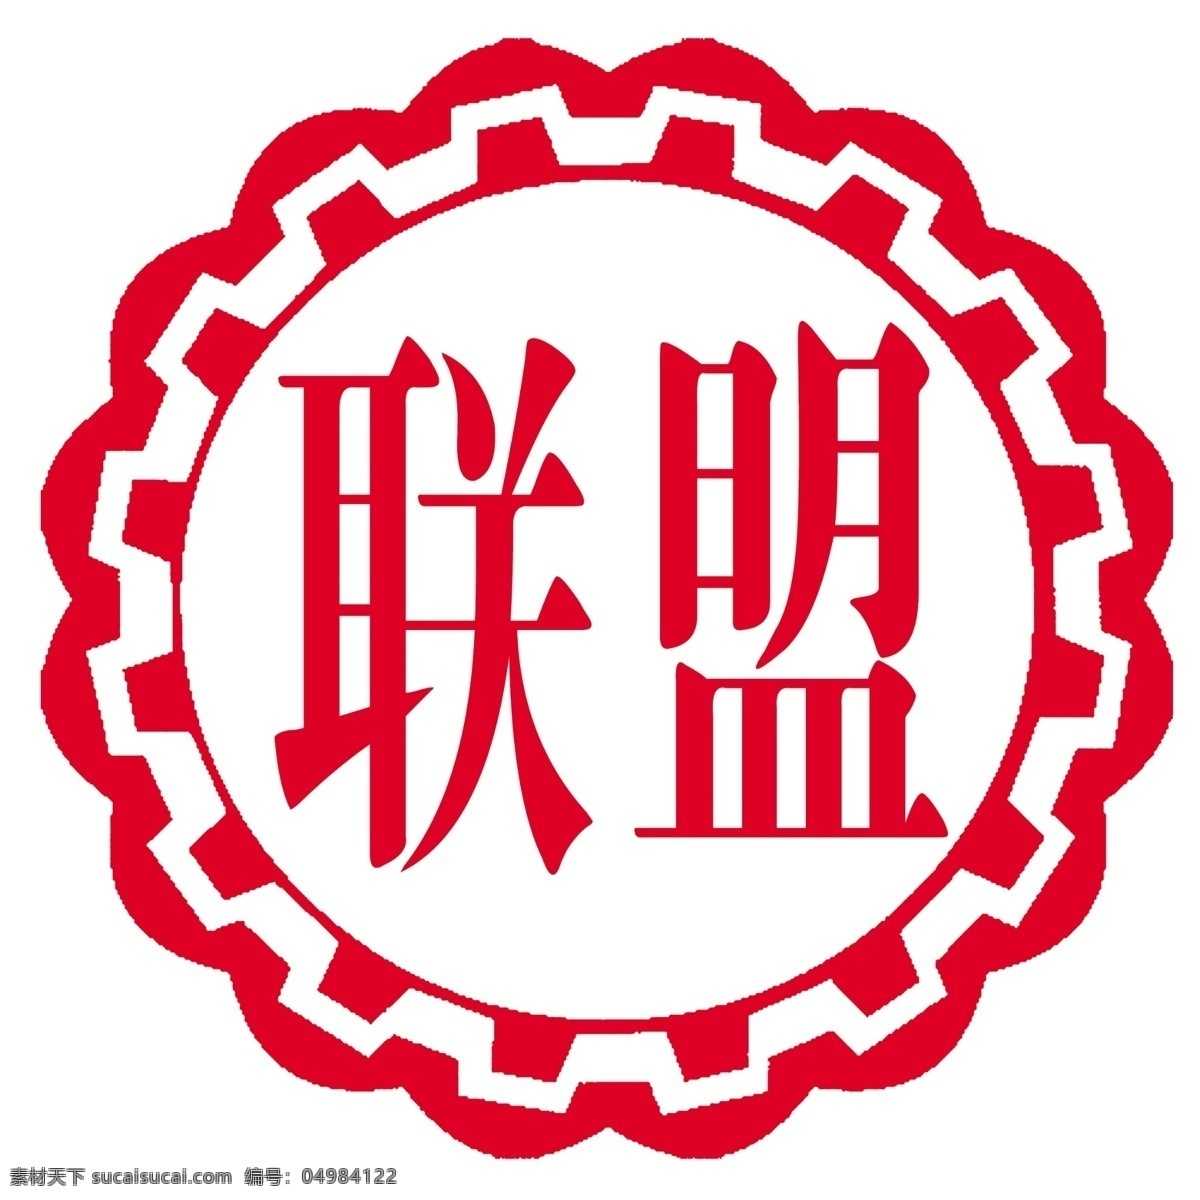 联盟化工标志 联盟 联盟化工 山东联盟 联盟标志 山东联盟化工 logo设计